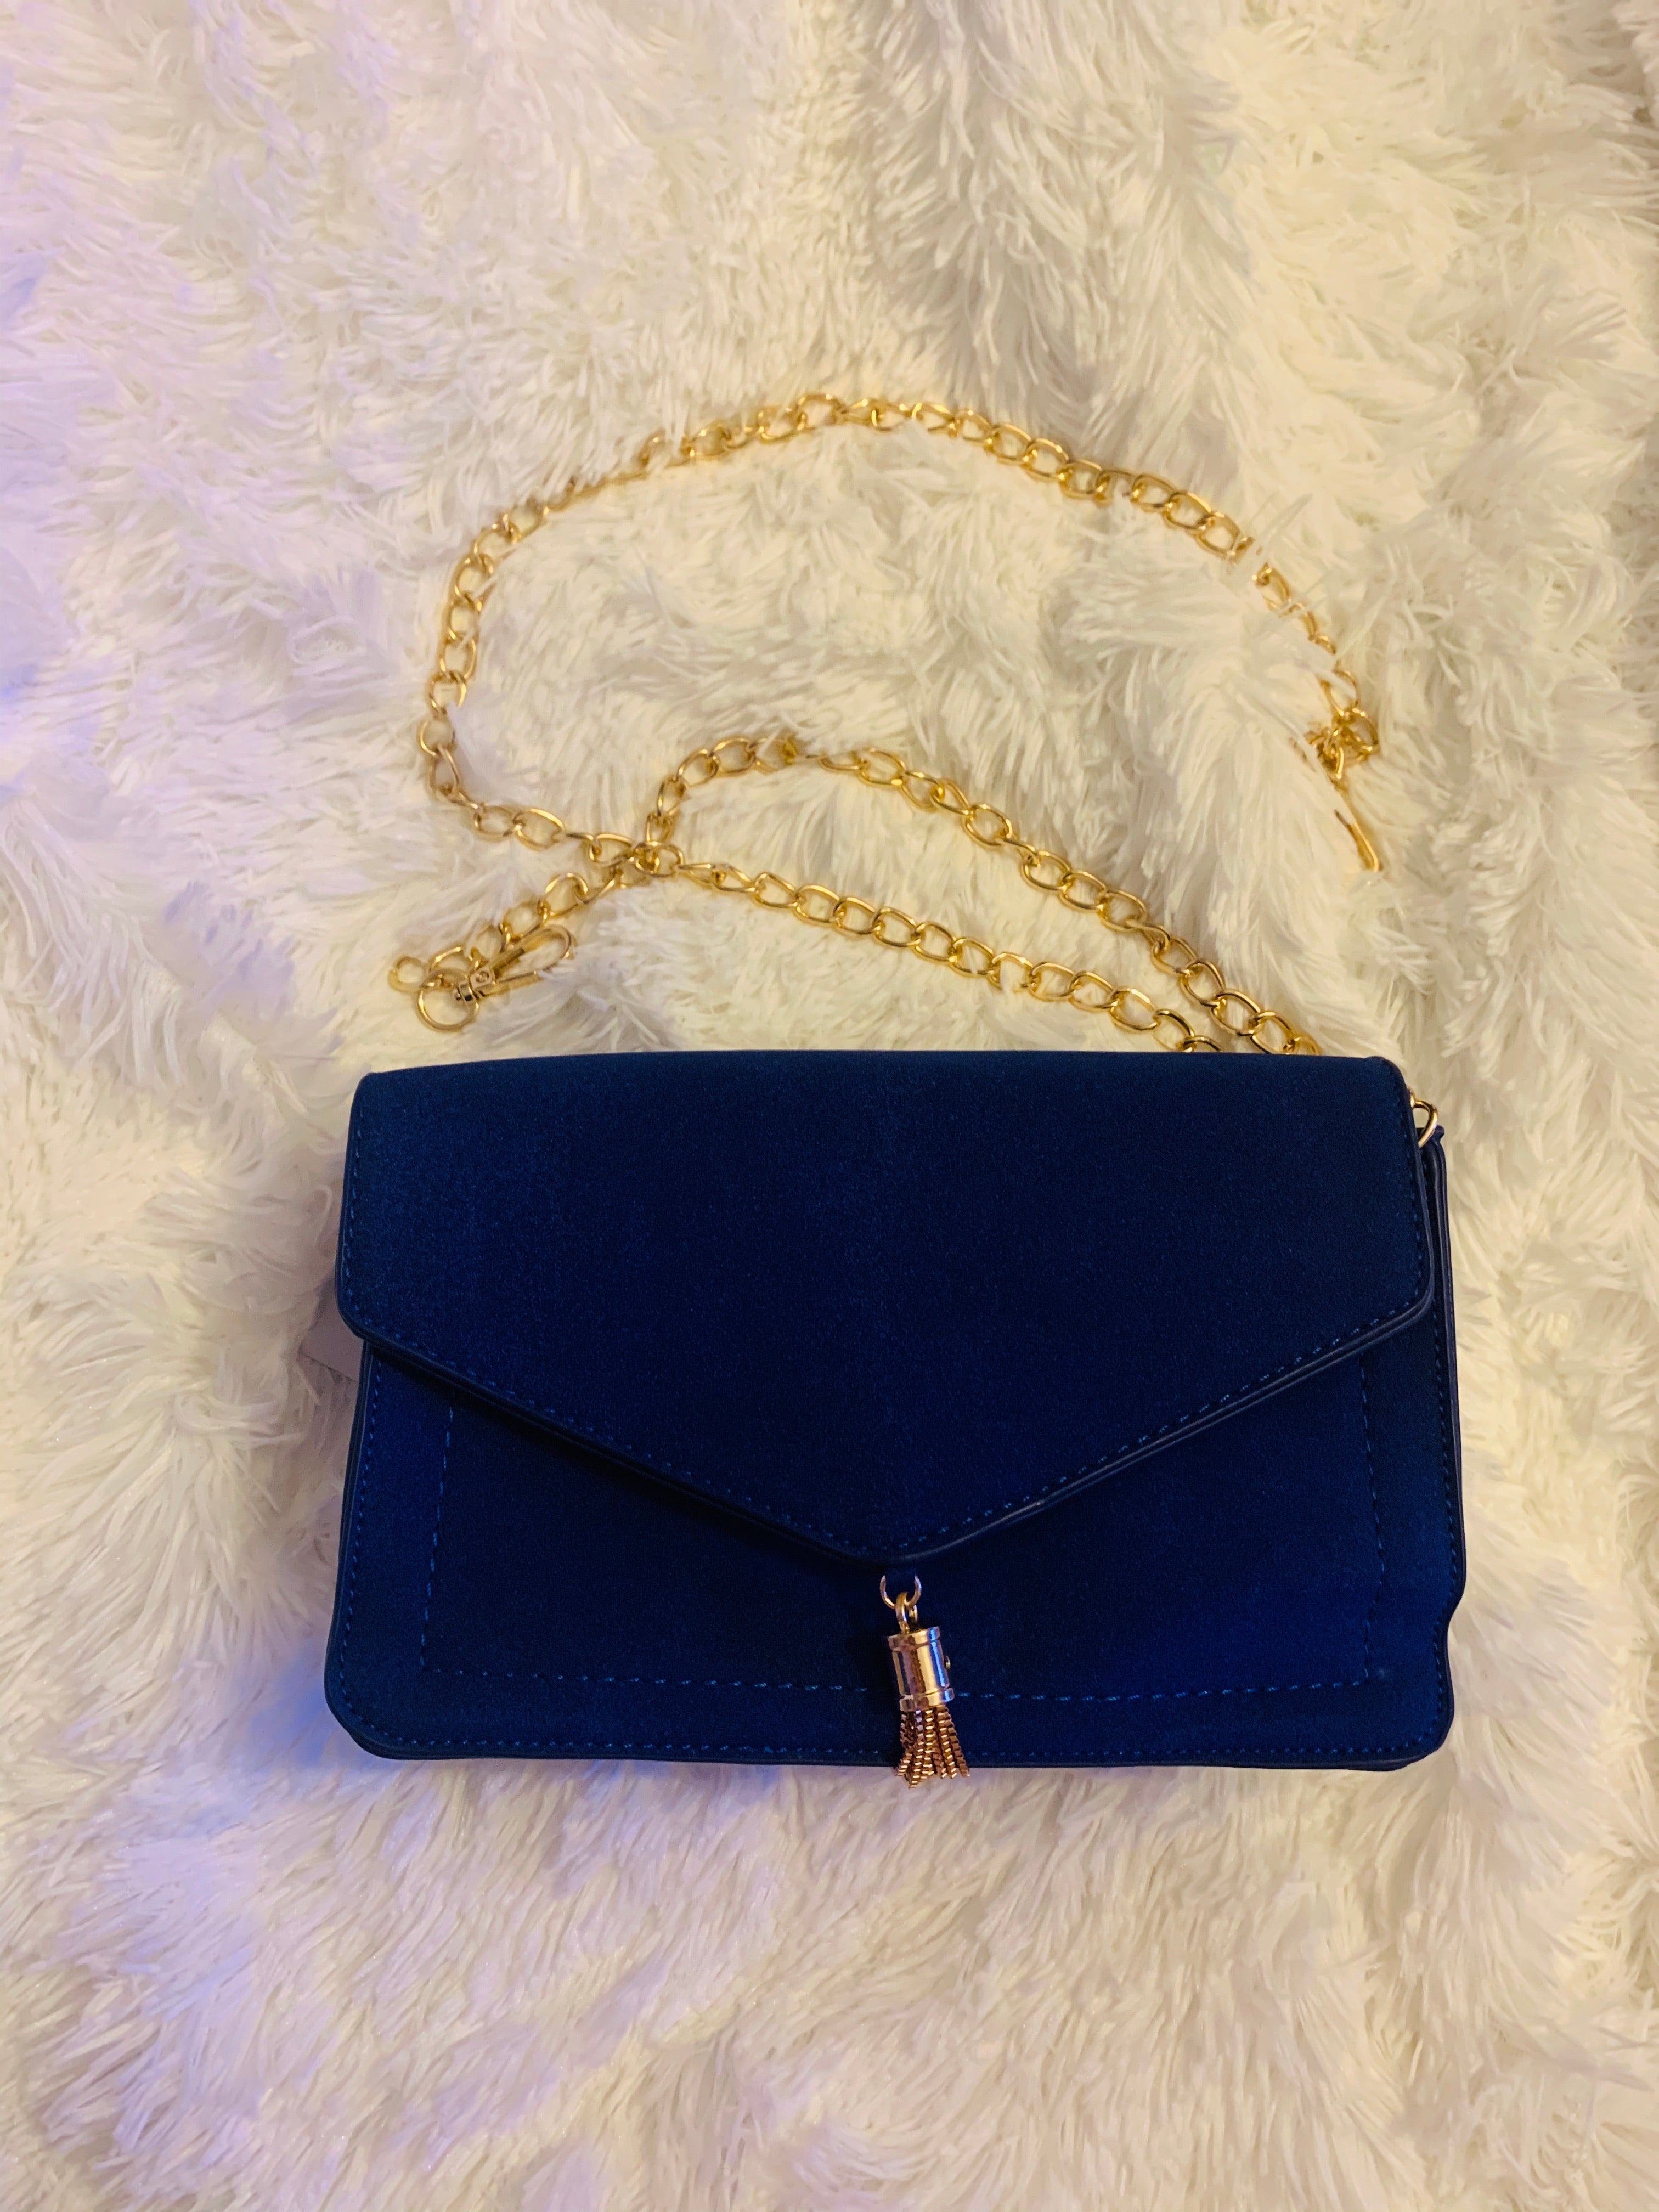 Genuine Suede Leather Evening Envelope Royal Blue Clutch Bag Crossbody  Shoulder Bag Bridesmaid Gift Bridal Elegant Wristlet & Chain Strap - Etsy  Israel